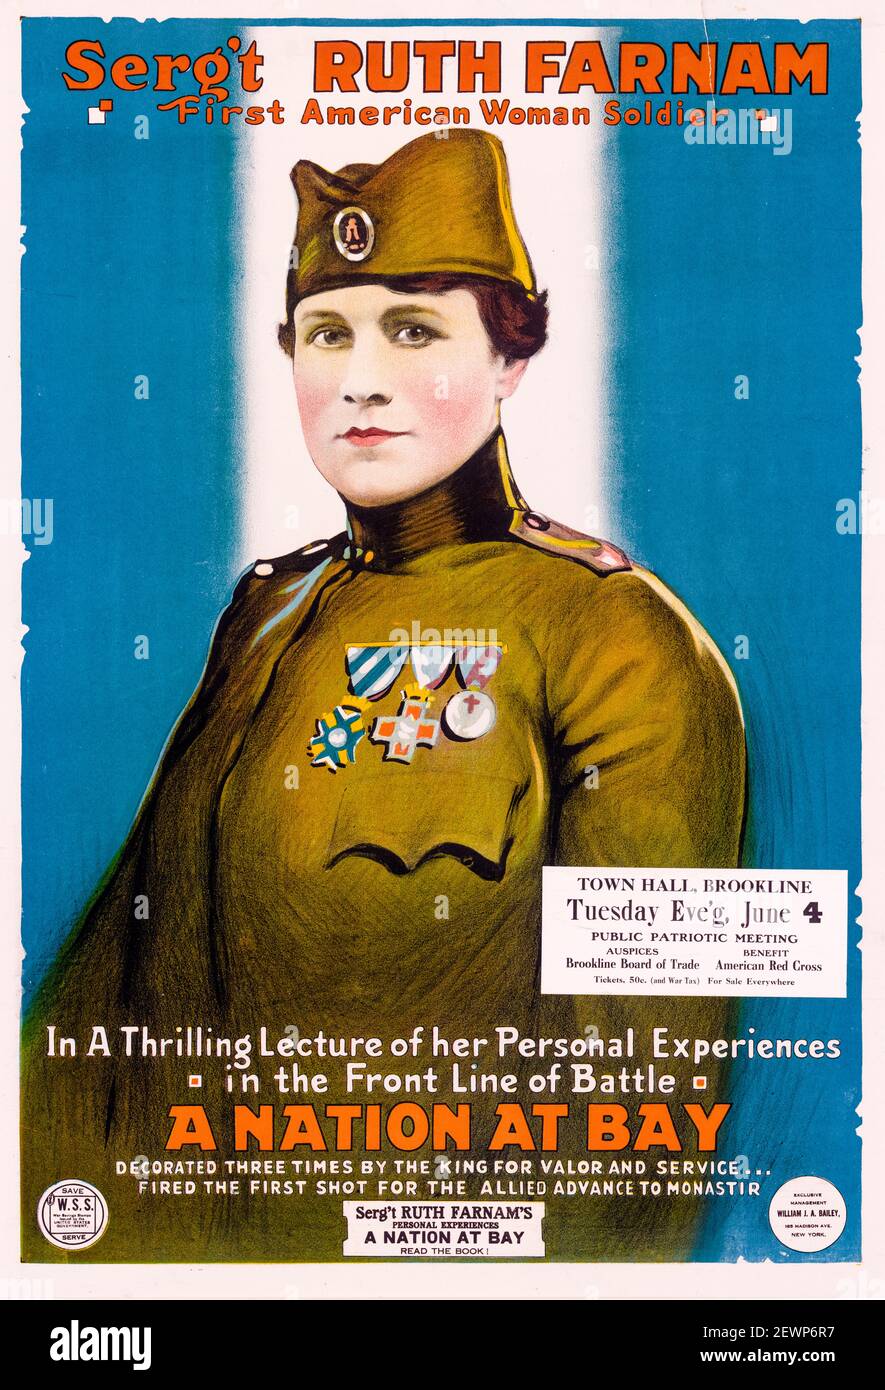 Affiche promotionnelle pour le Sergent Ruth Stanley Farnam (1873-1956), la première femme militaire américaine, WW1, 1918 Banque D'Images